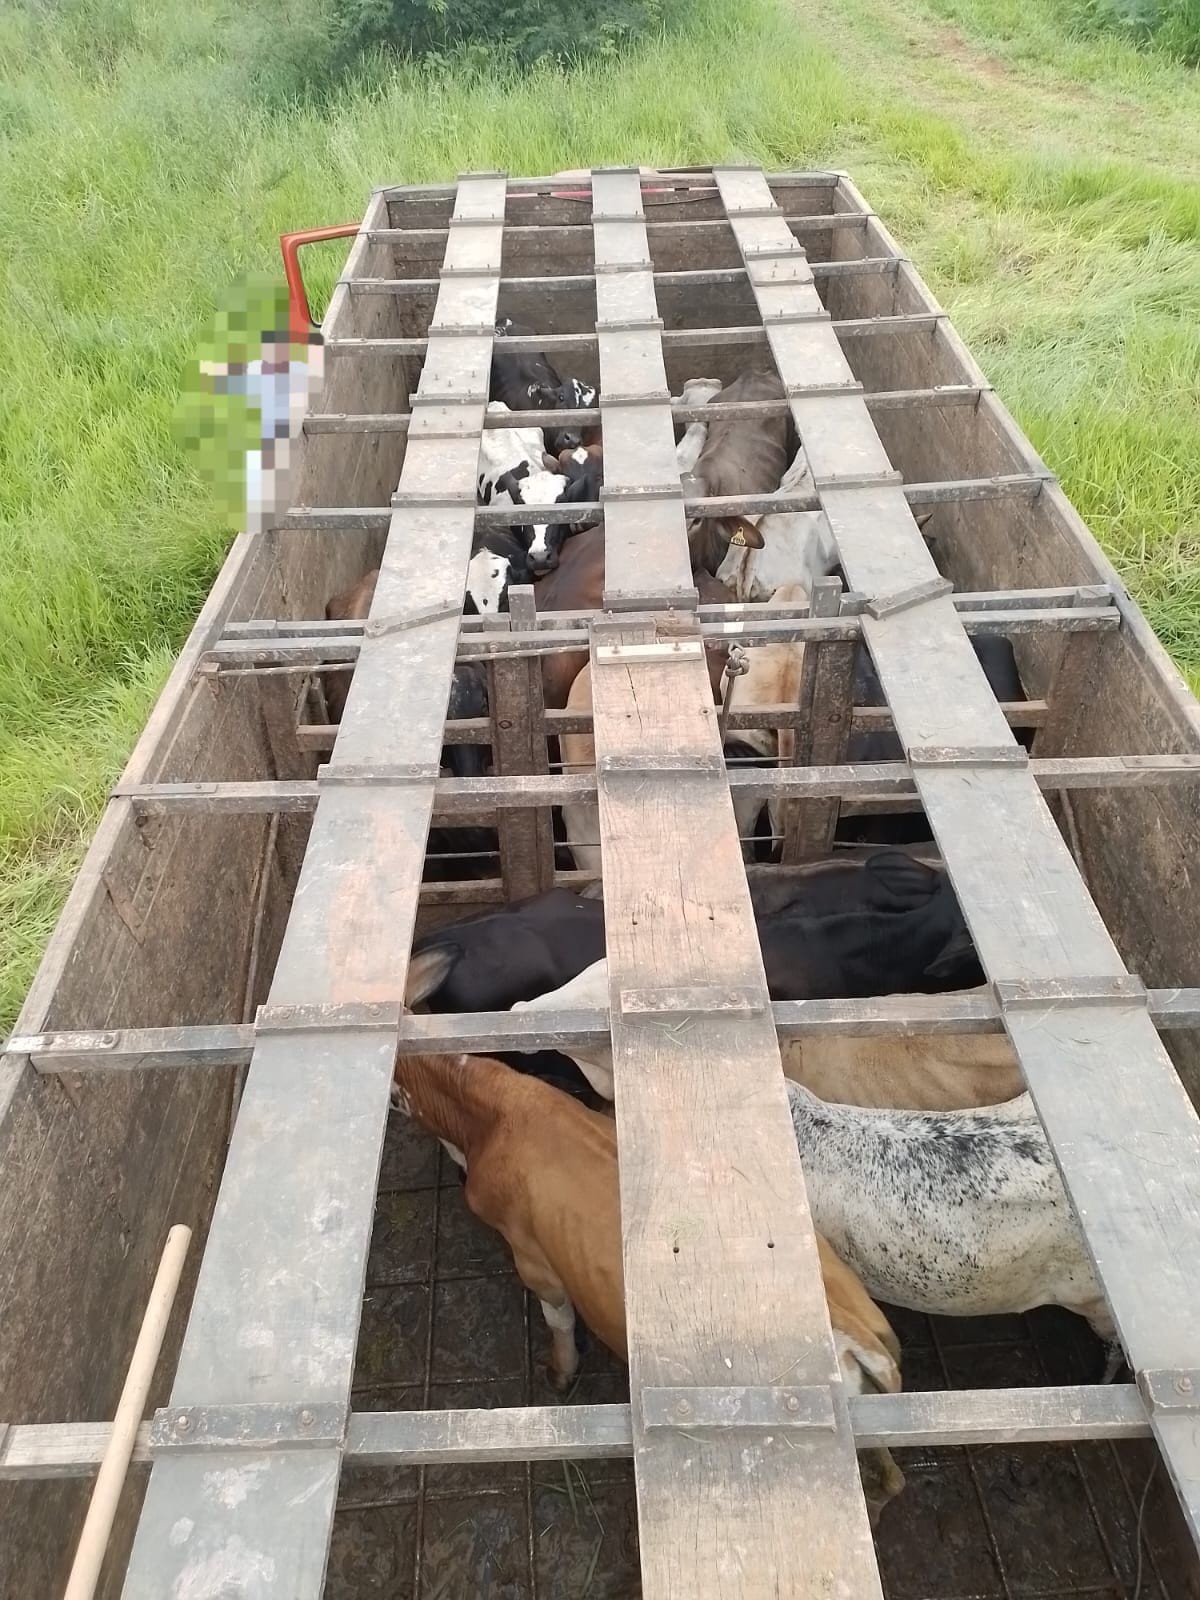 Após anunciarem venda de gado furtado, homens são presos em Bambuí